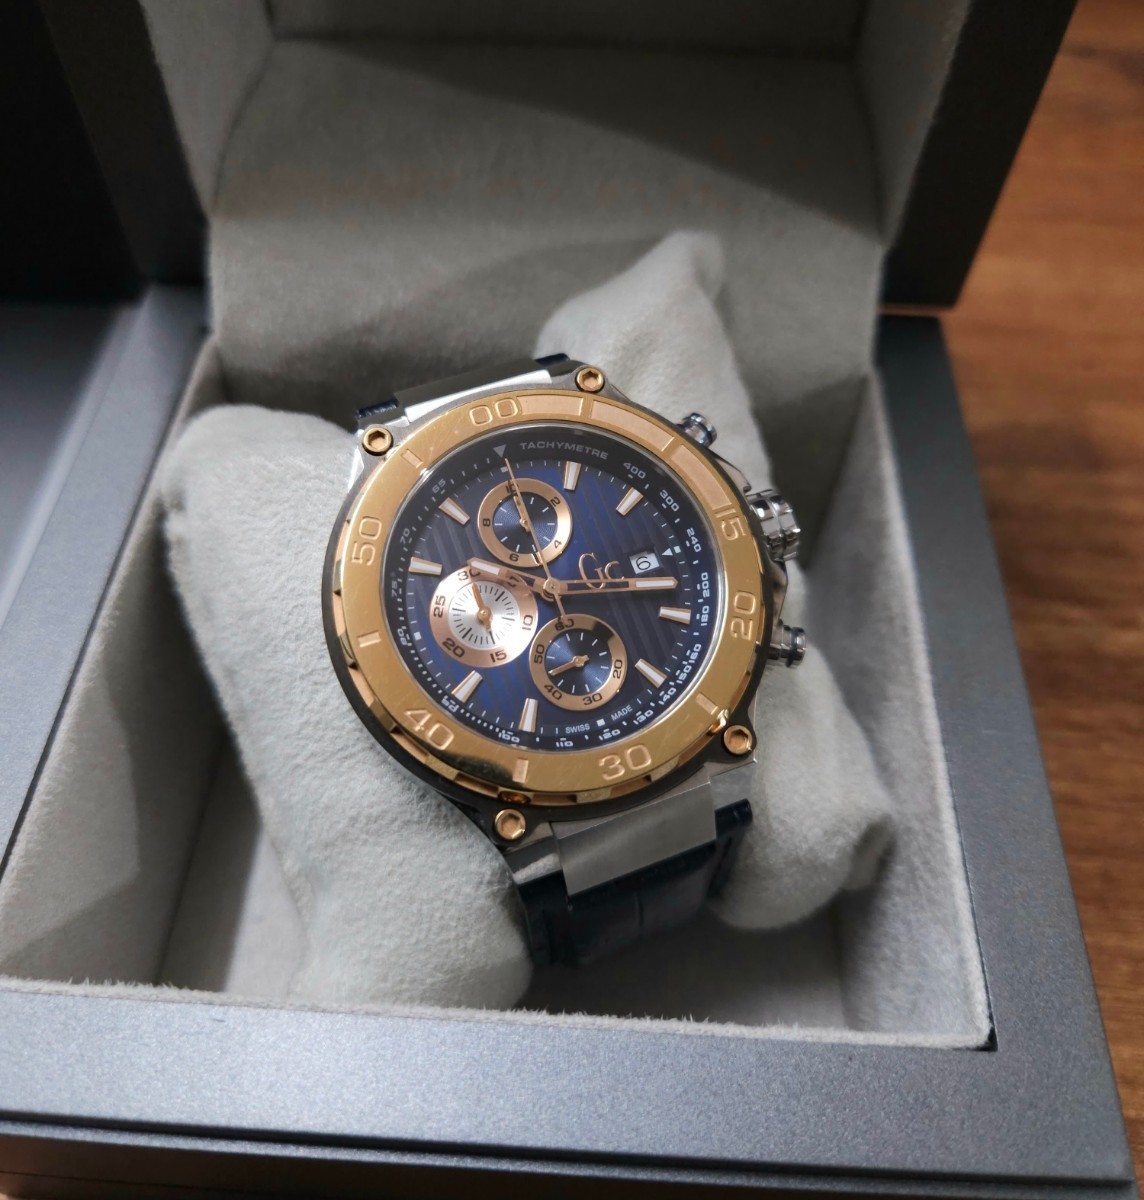 美品☆GC Guess Collection クロノグラフ 腕時計 メンズ デイト ブルーレザーバンド サファイアクリスタル x56011g7s 電池交換済み